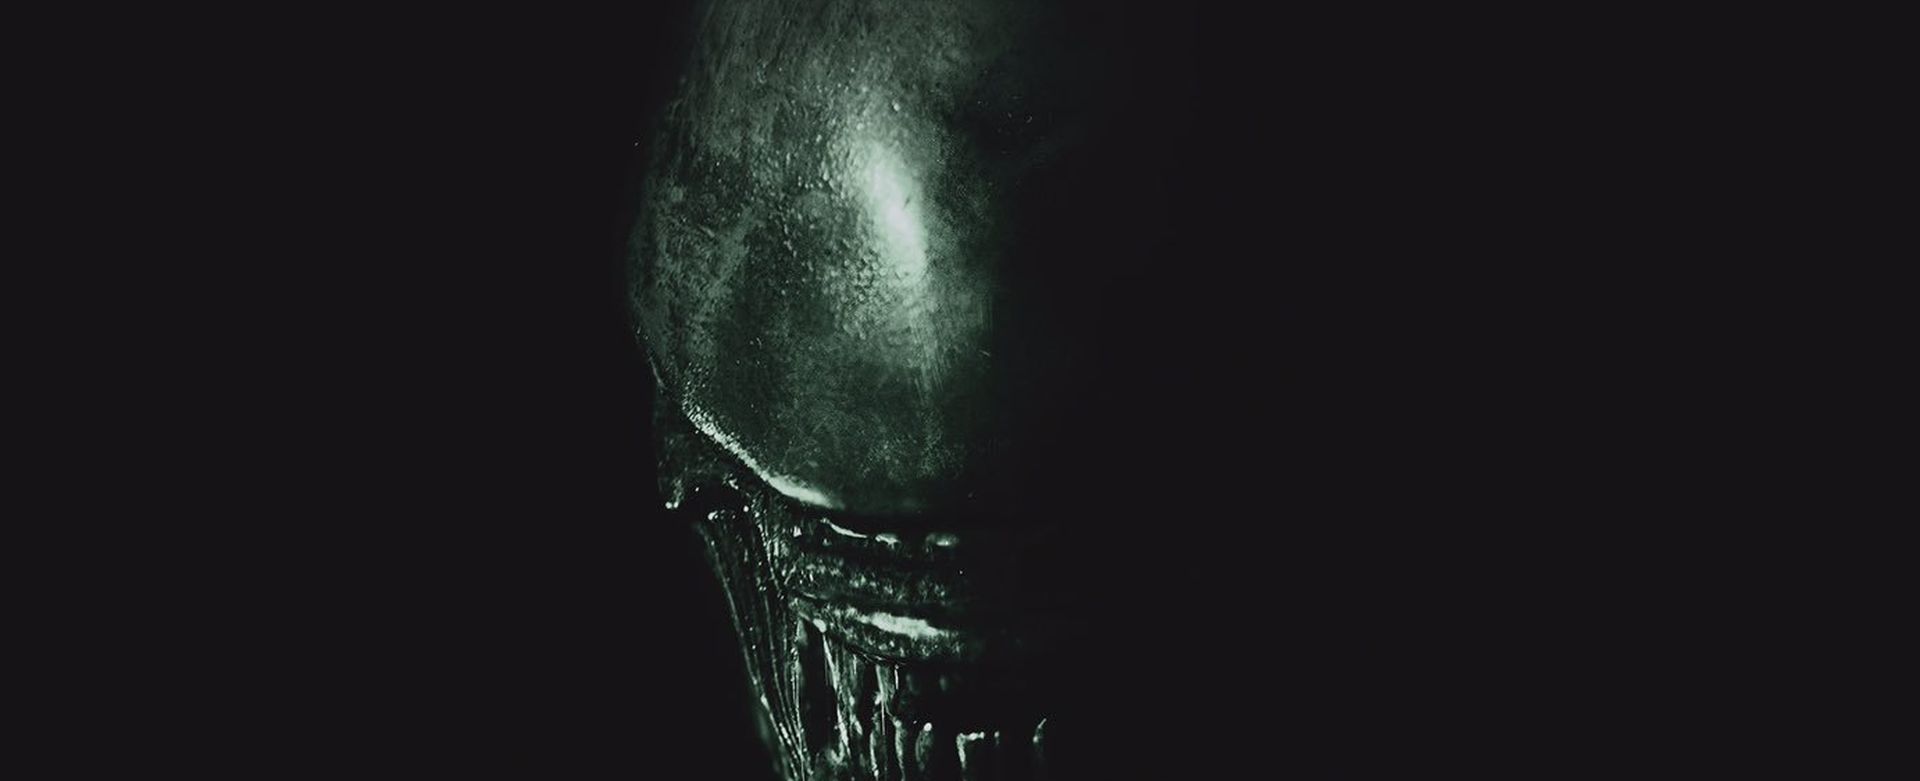 Alien: Covenant - 2D | 18/05/17